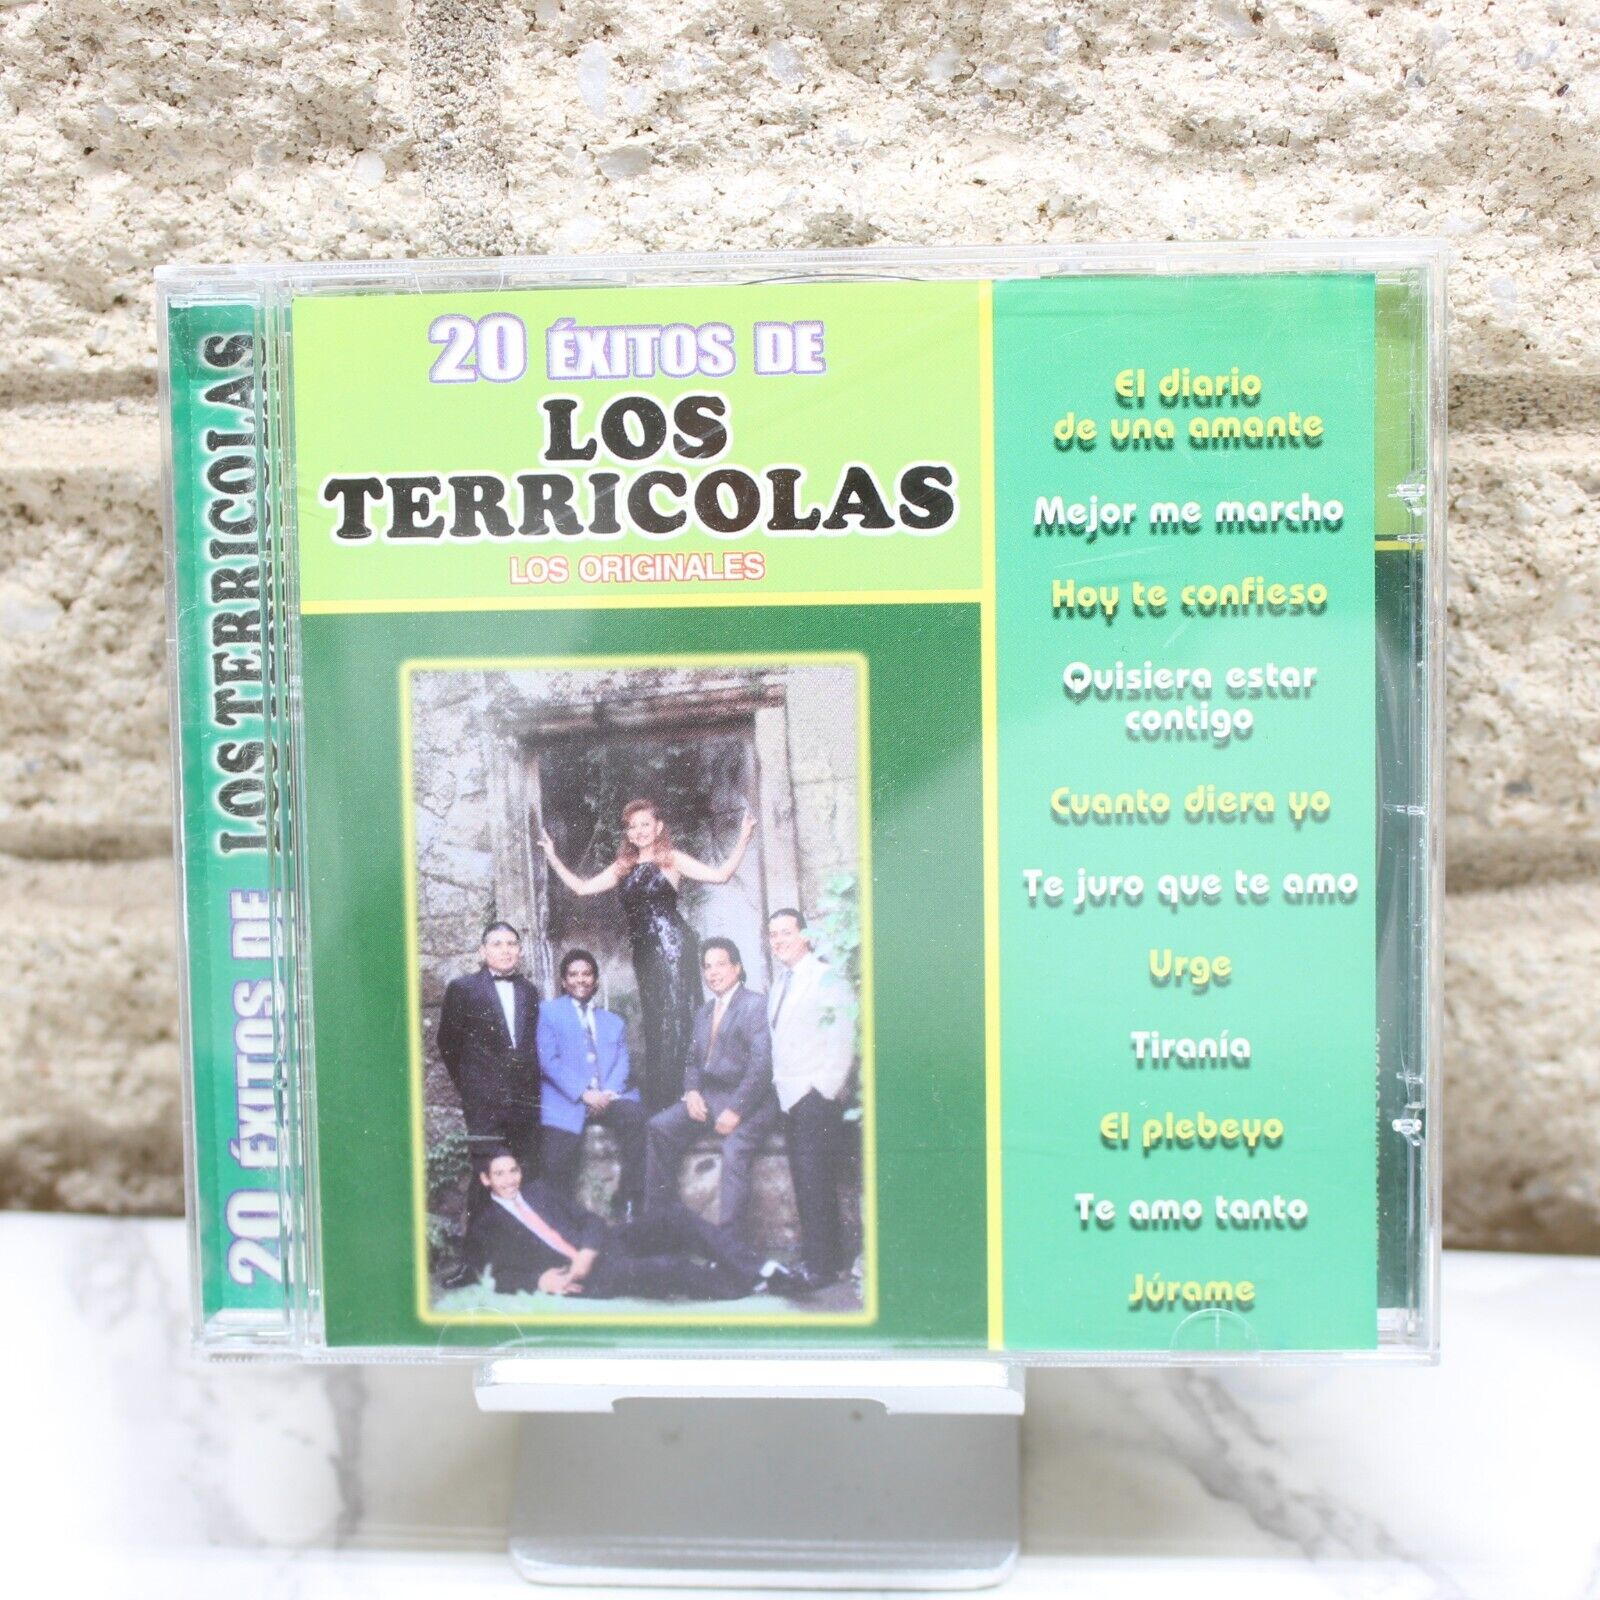 20 Exitos de Los Terricolas Los Originales CD RARE